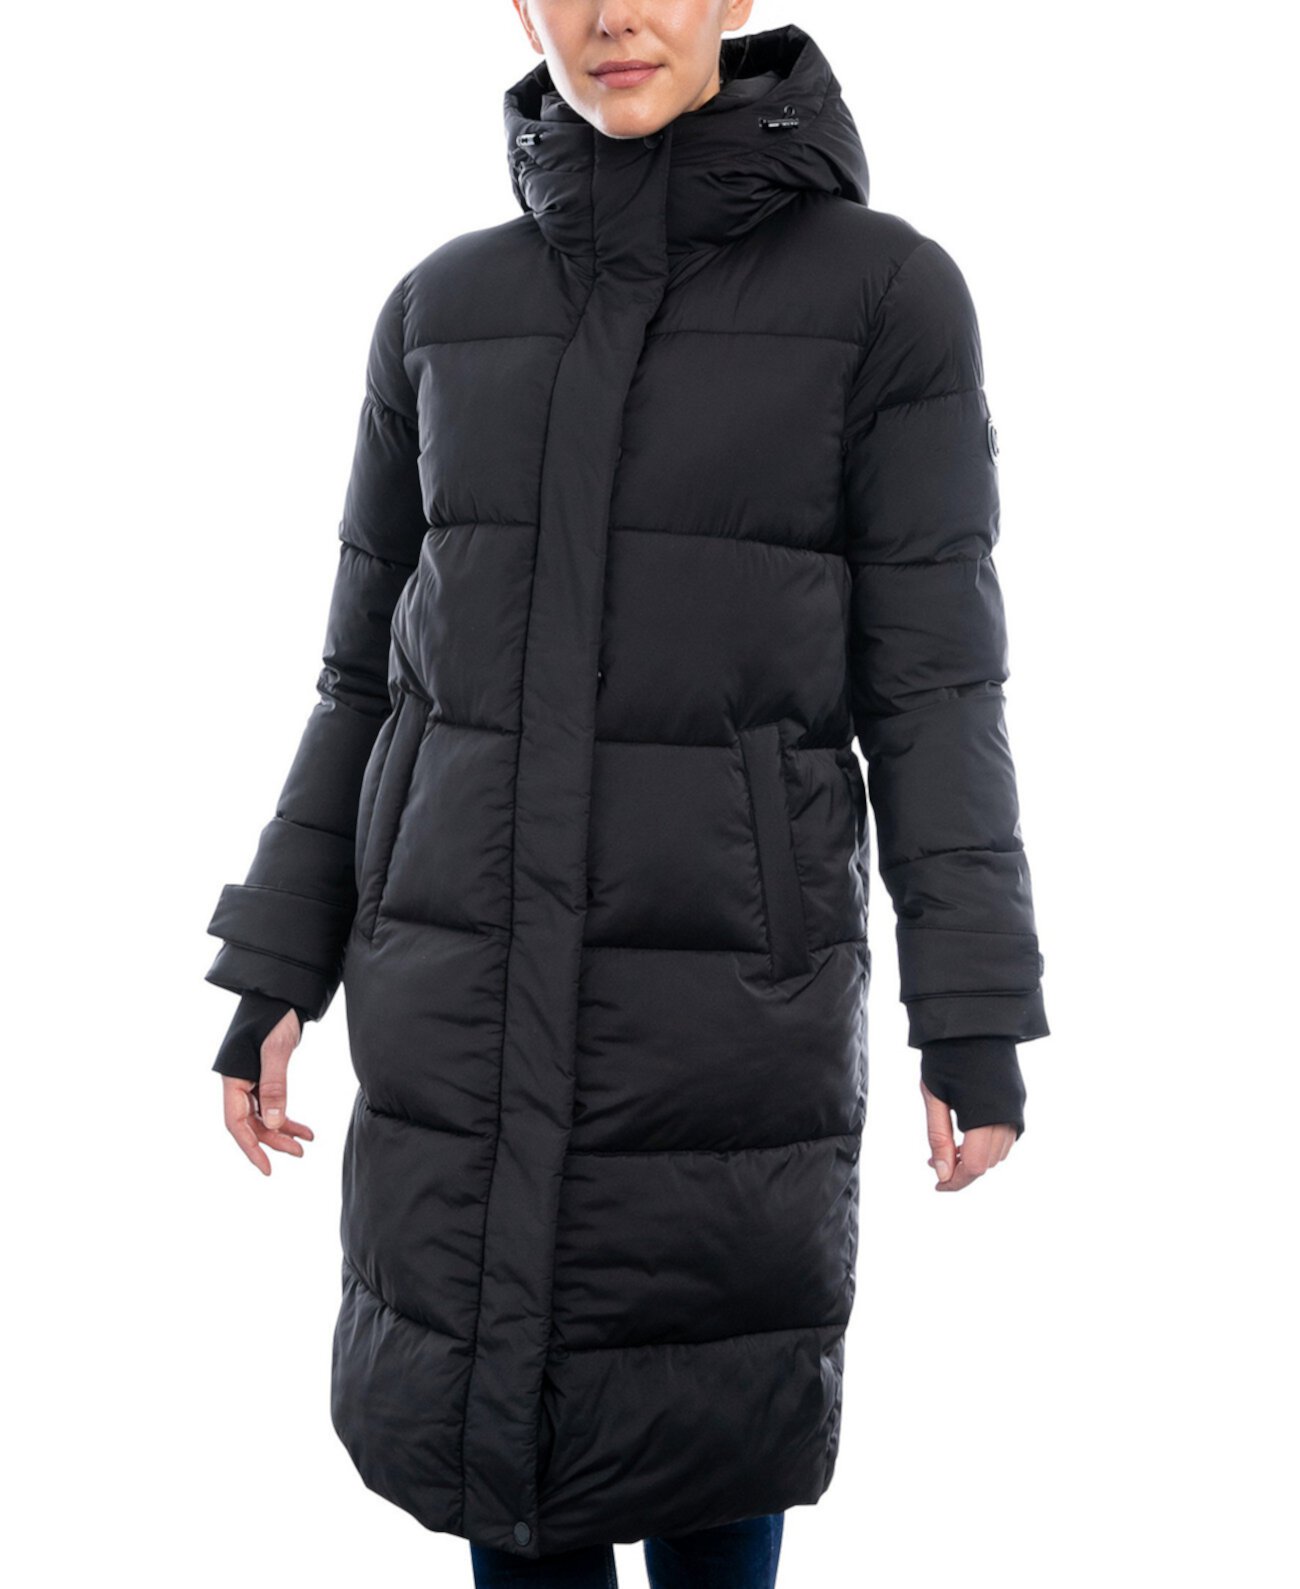 Женское пуховое пальто миниатюрного размера с капюшоном Michael Kors